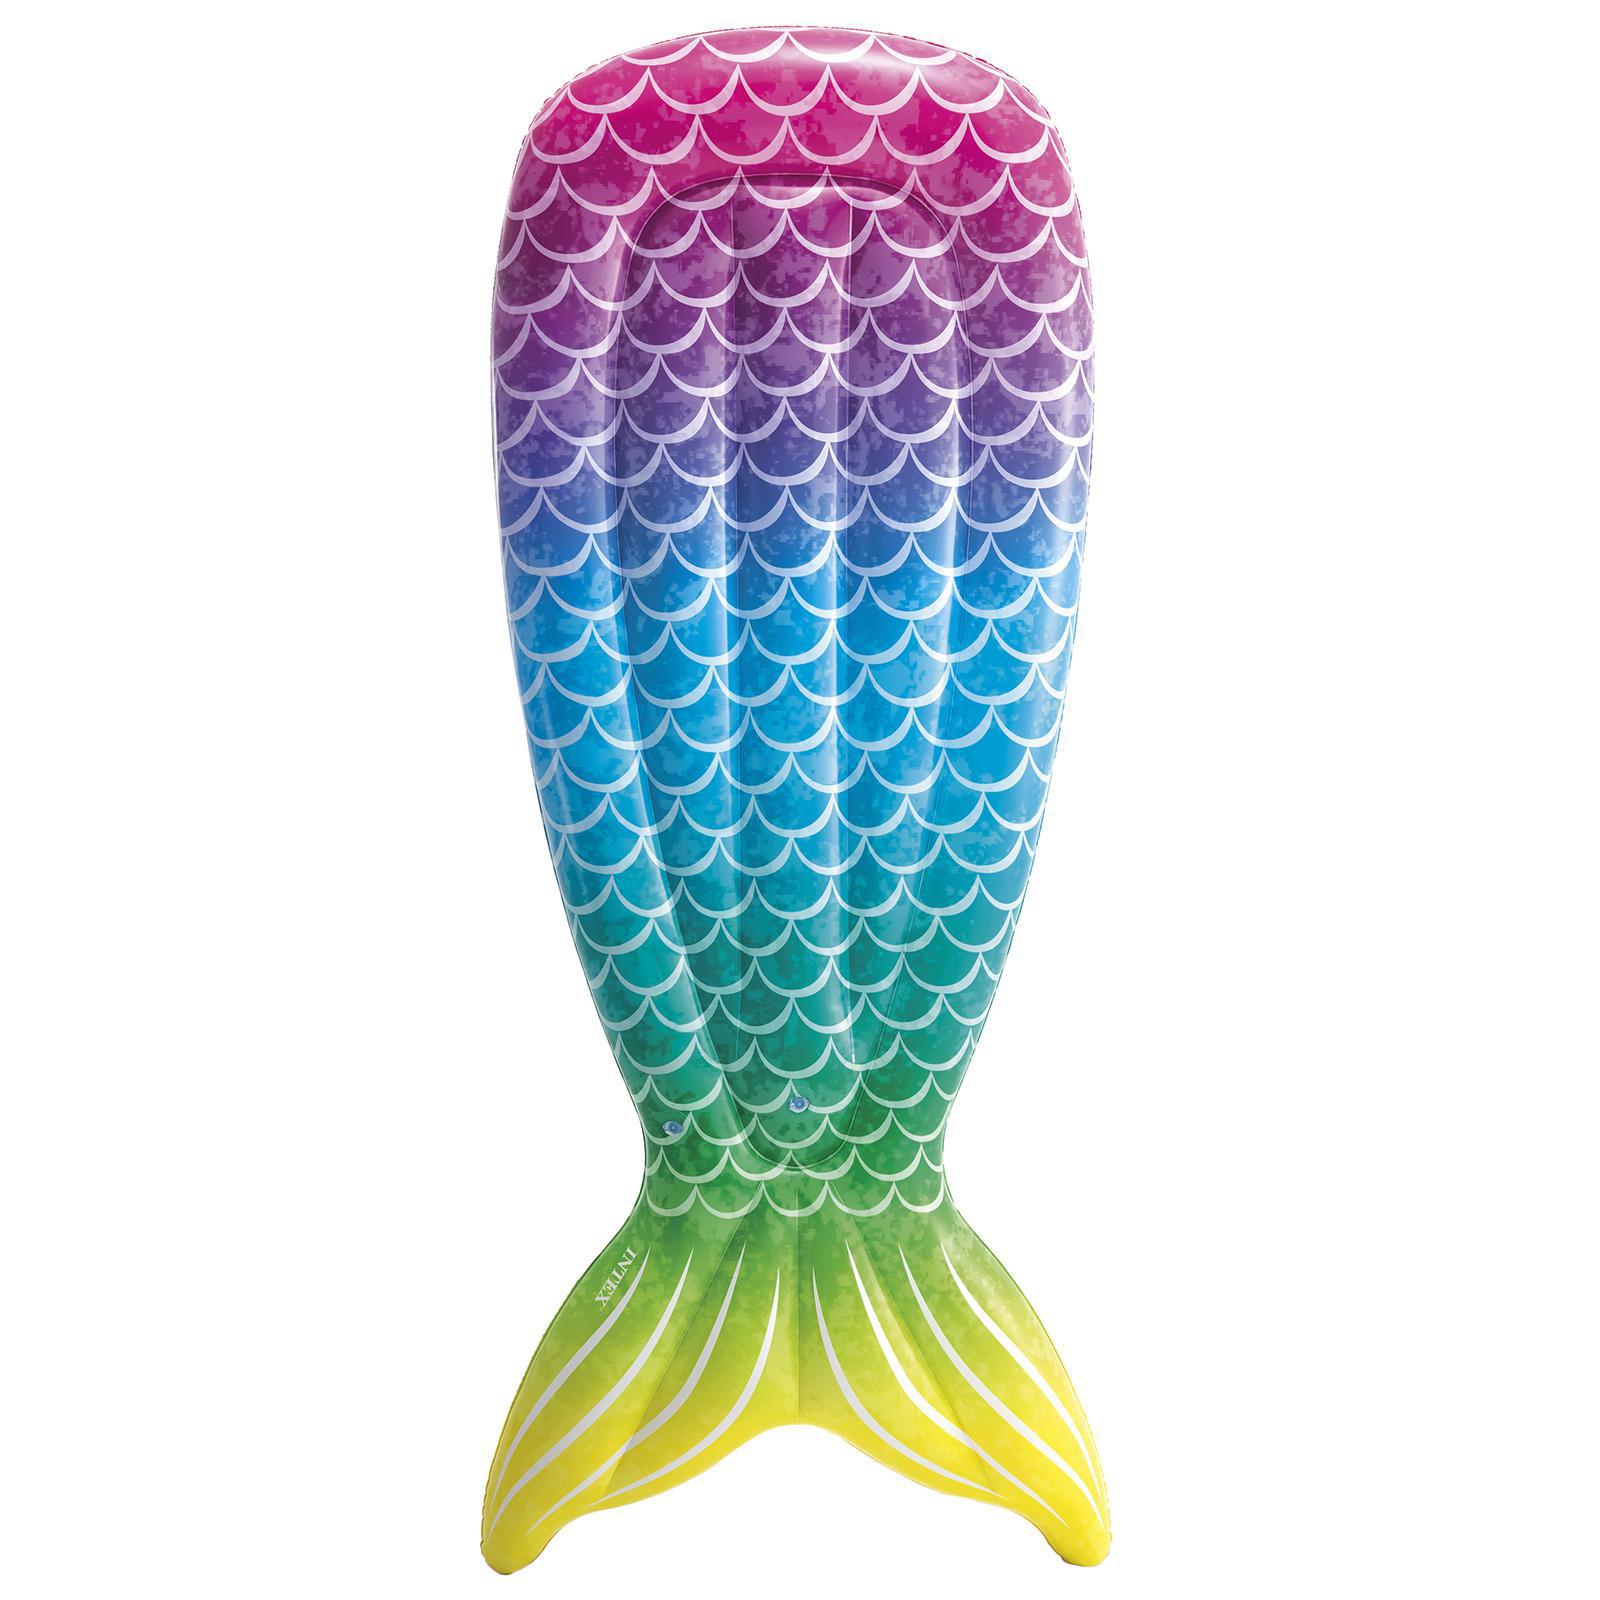 Как сделать силиконовый хвост русалки (для плавания) | Пикабу